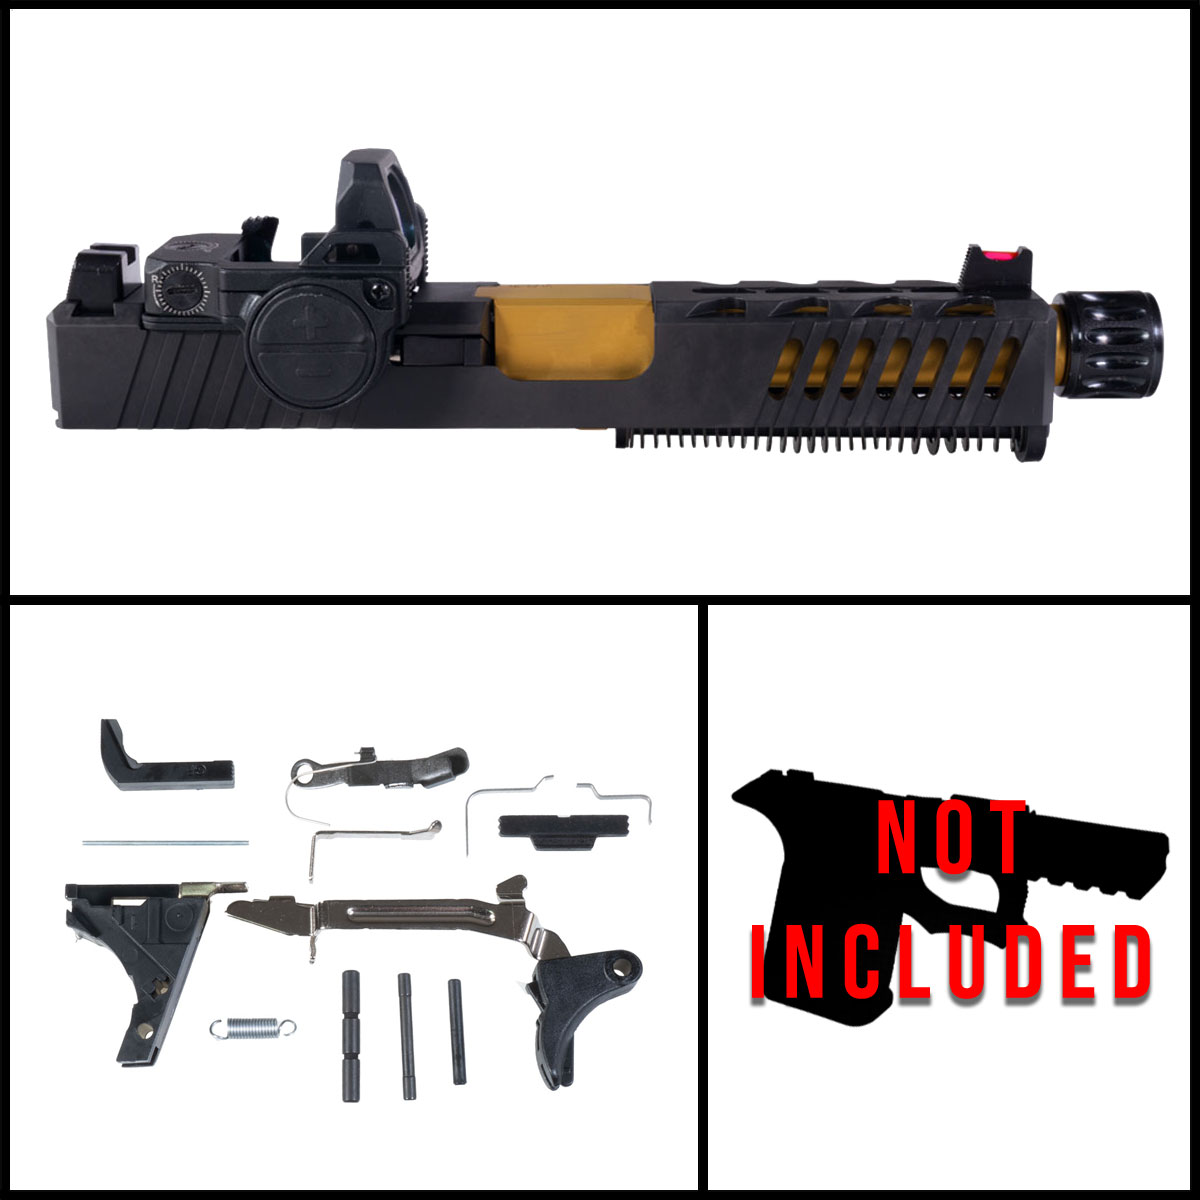 DDS 'Fovea w/ VISM FlipDot Pro' 9mm Full Pistol Build Kit (Everything Minus Frame) - Glock 19 Gen 1-3 Compatible